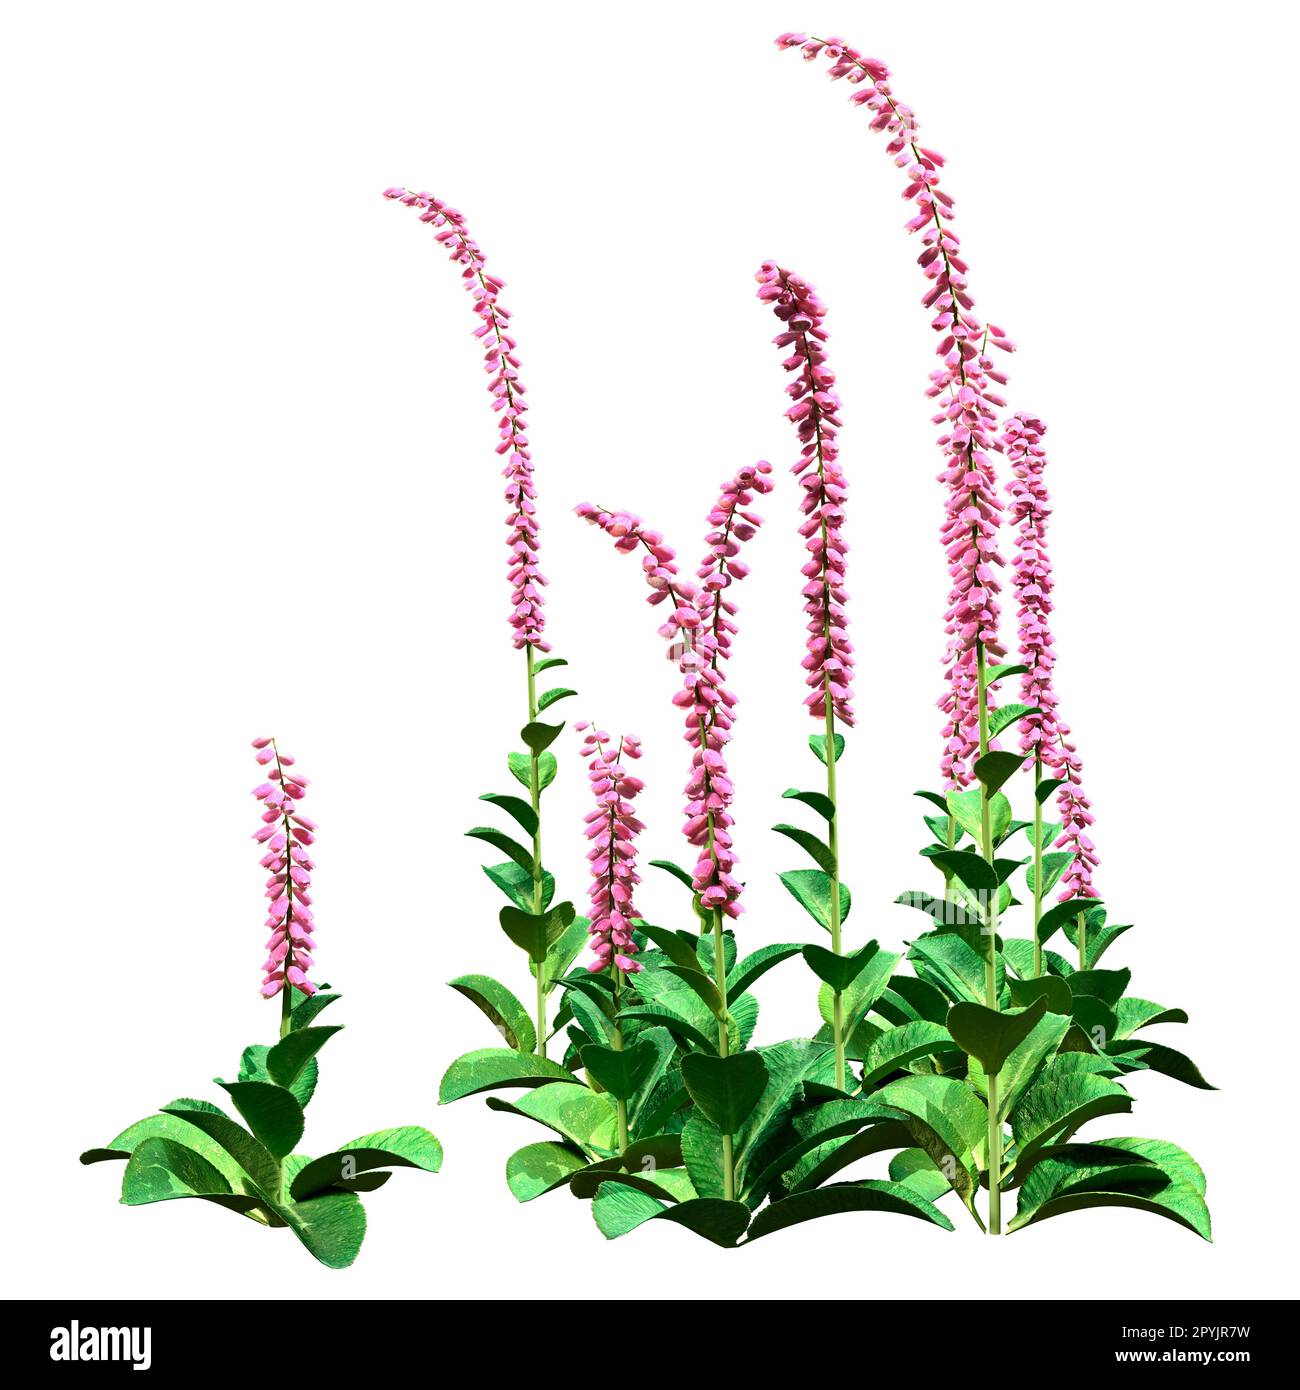 3D rendu de plantes de foxglove ou de Digitalis purpurea ou de foxglove commun isolé sur fond blanc Banque D'Images